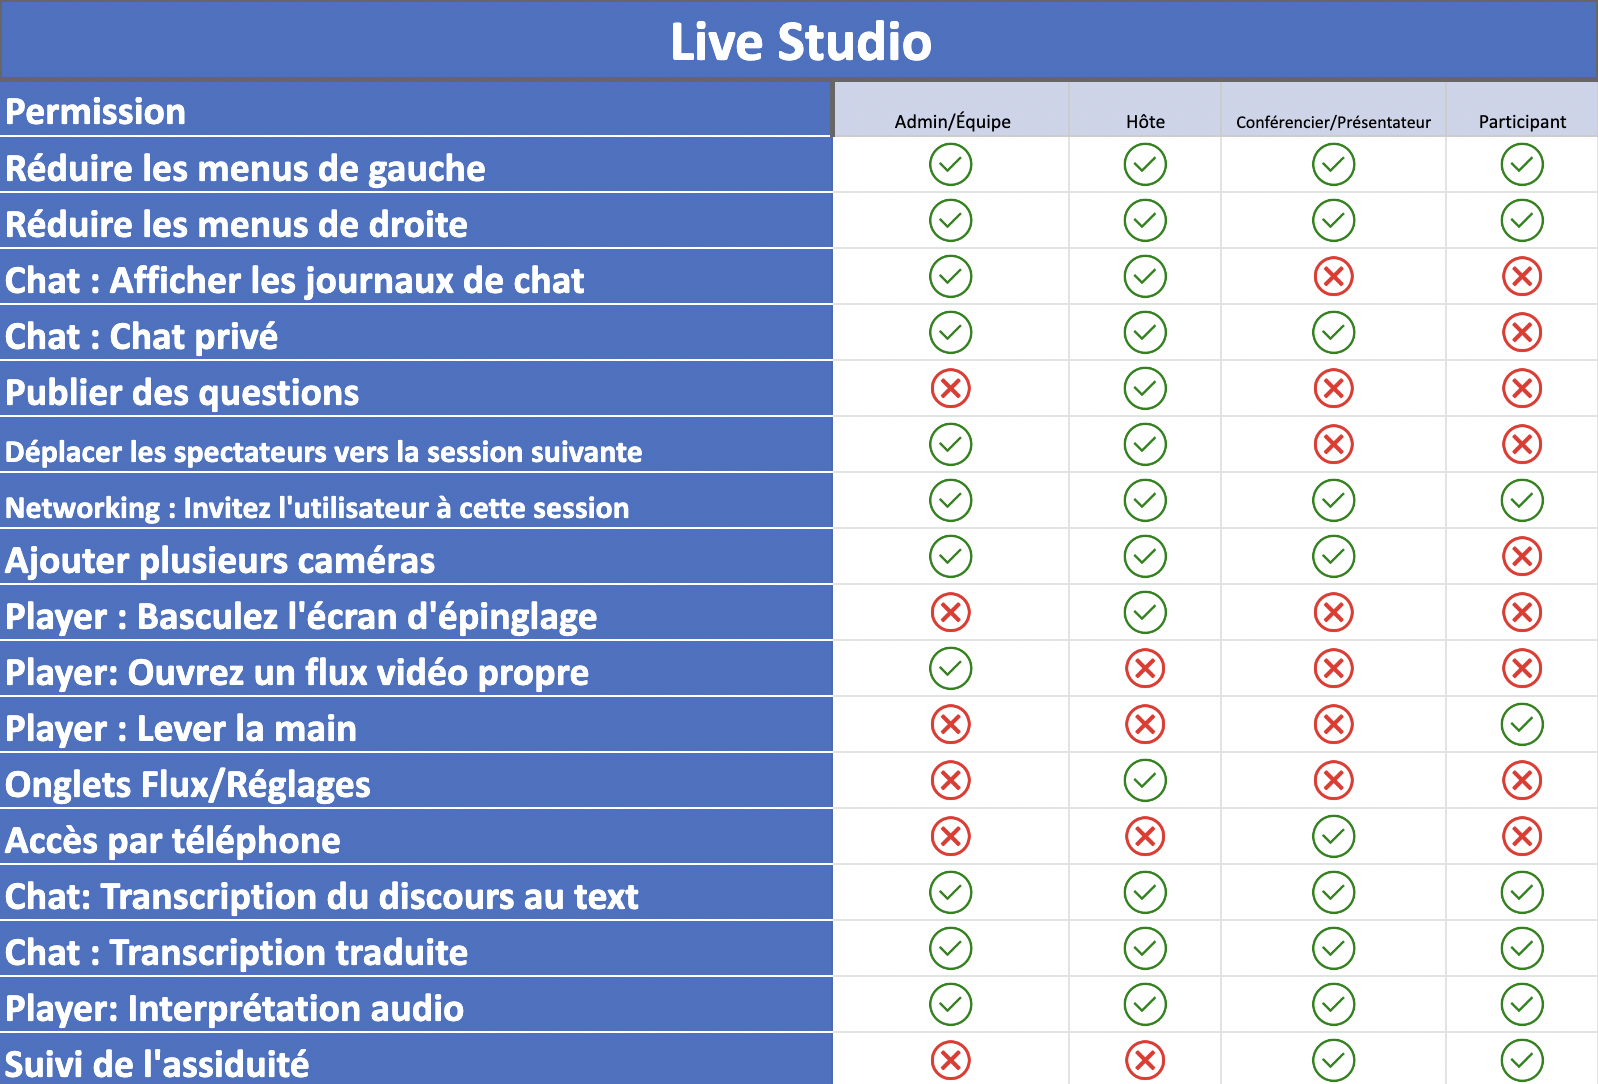 Tableau montrant ce que chaque niveau de permission peut faire dans le Live Studio